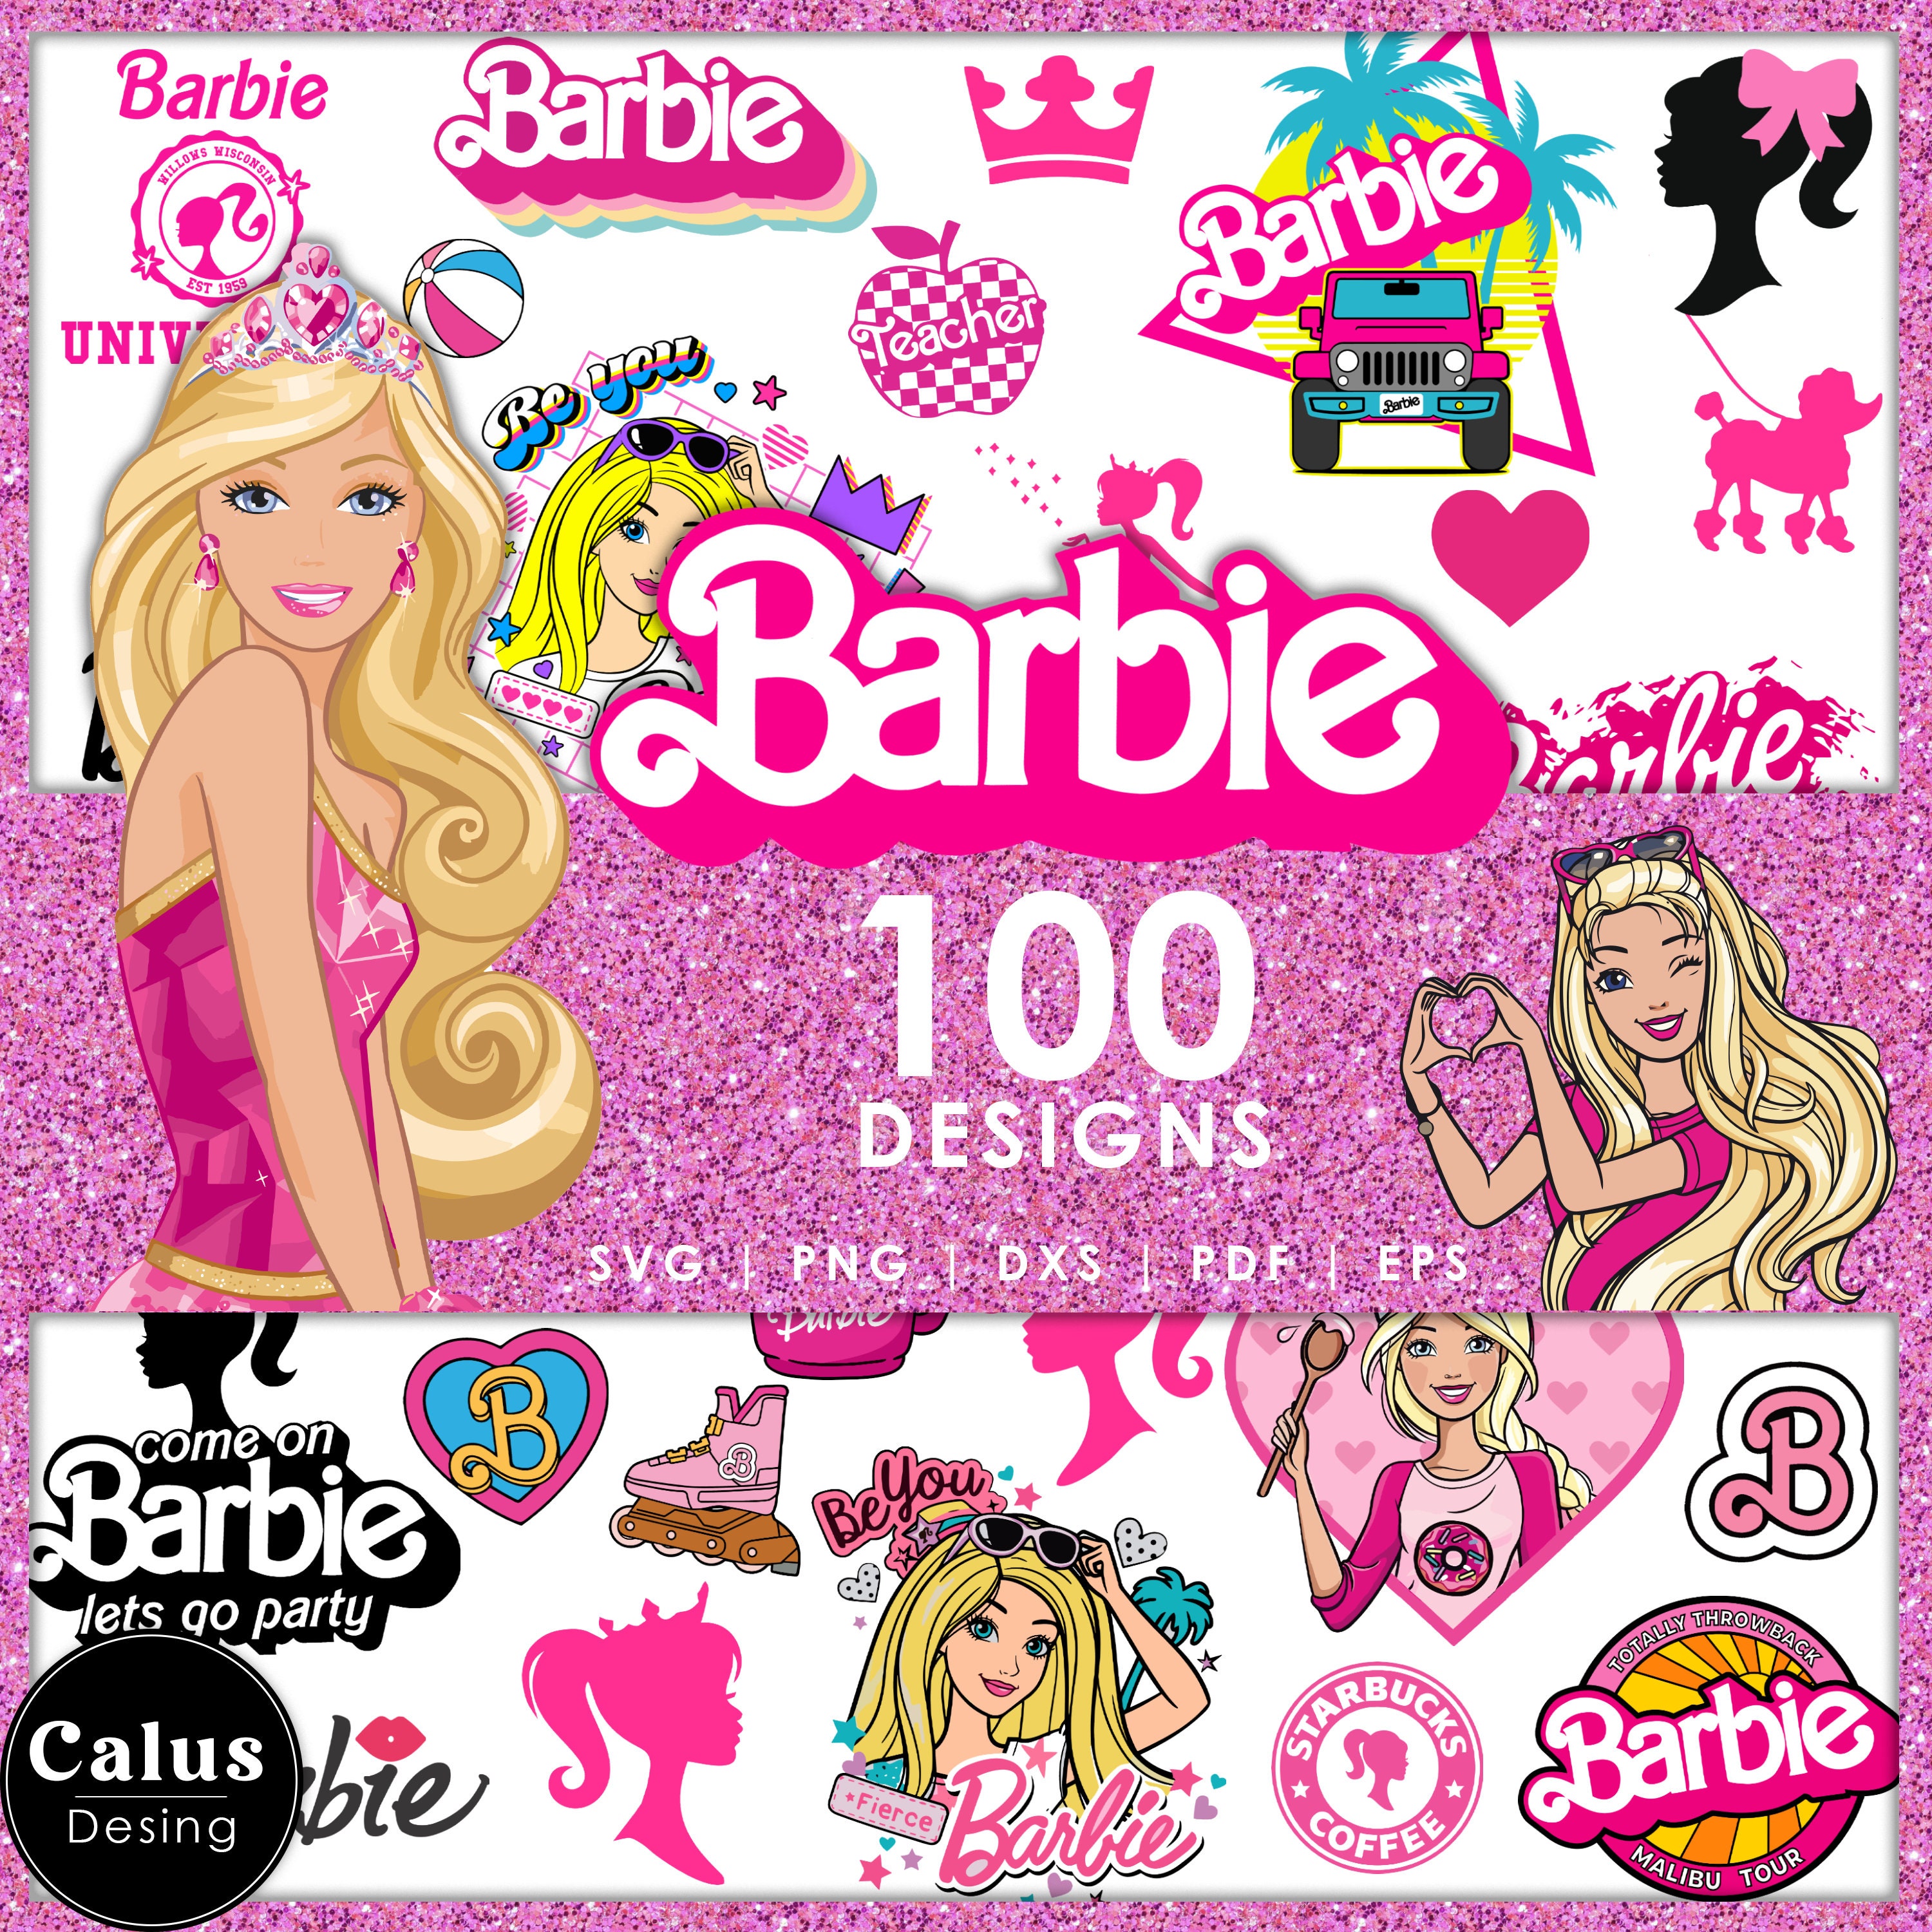 Hoja de pegatinas Barbie Extra - 30811711 BarbiePedia